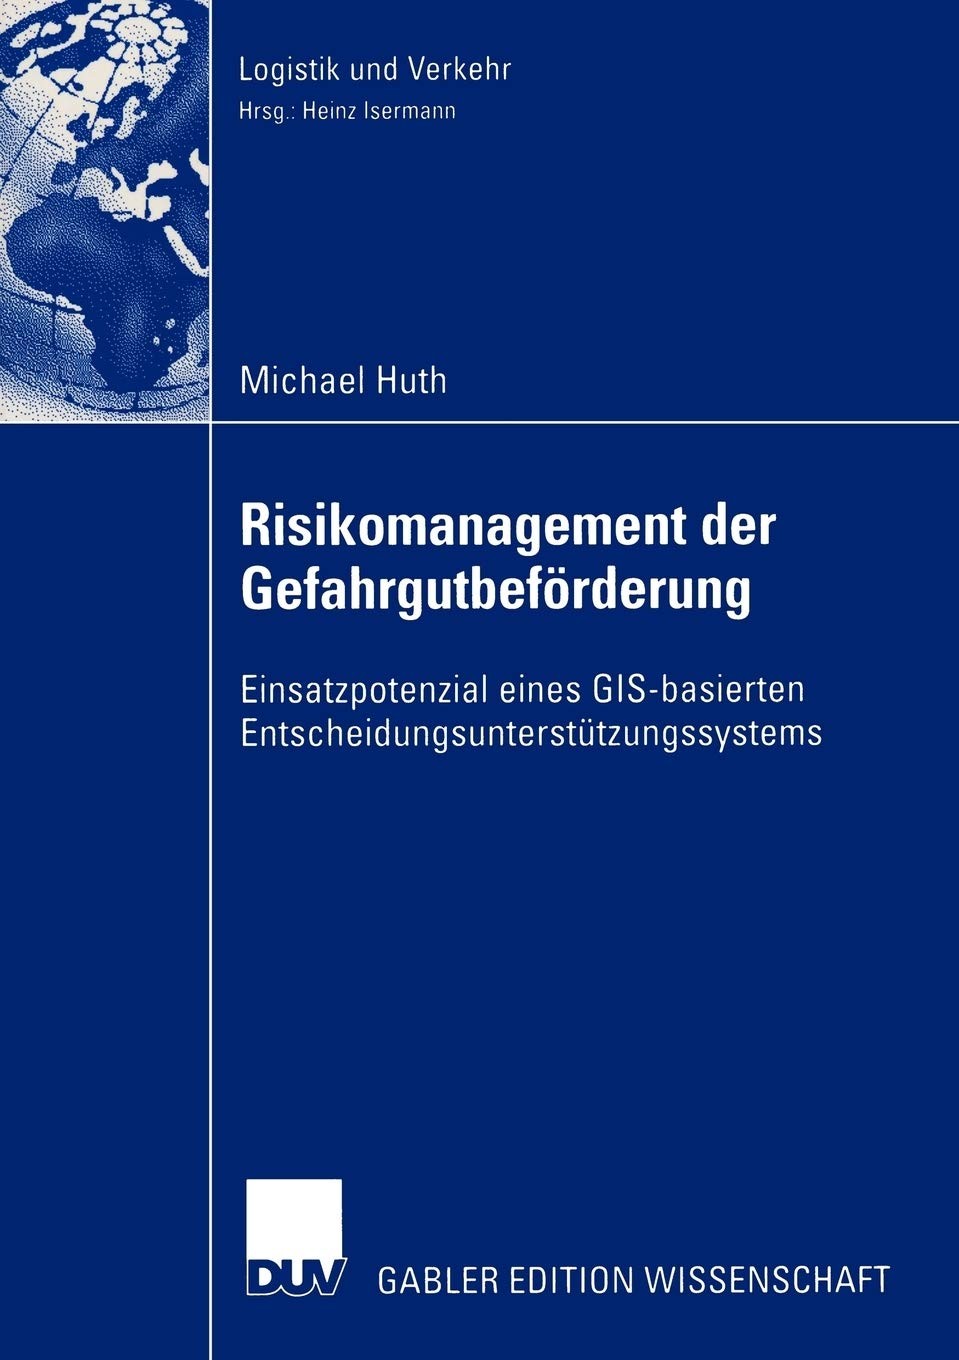 Risikomanagement der Gefahrgutbeförderung: Einsatzpotential eines GIS-basierten Entscheidungsunterstützungssystems